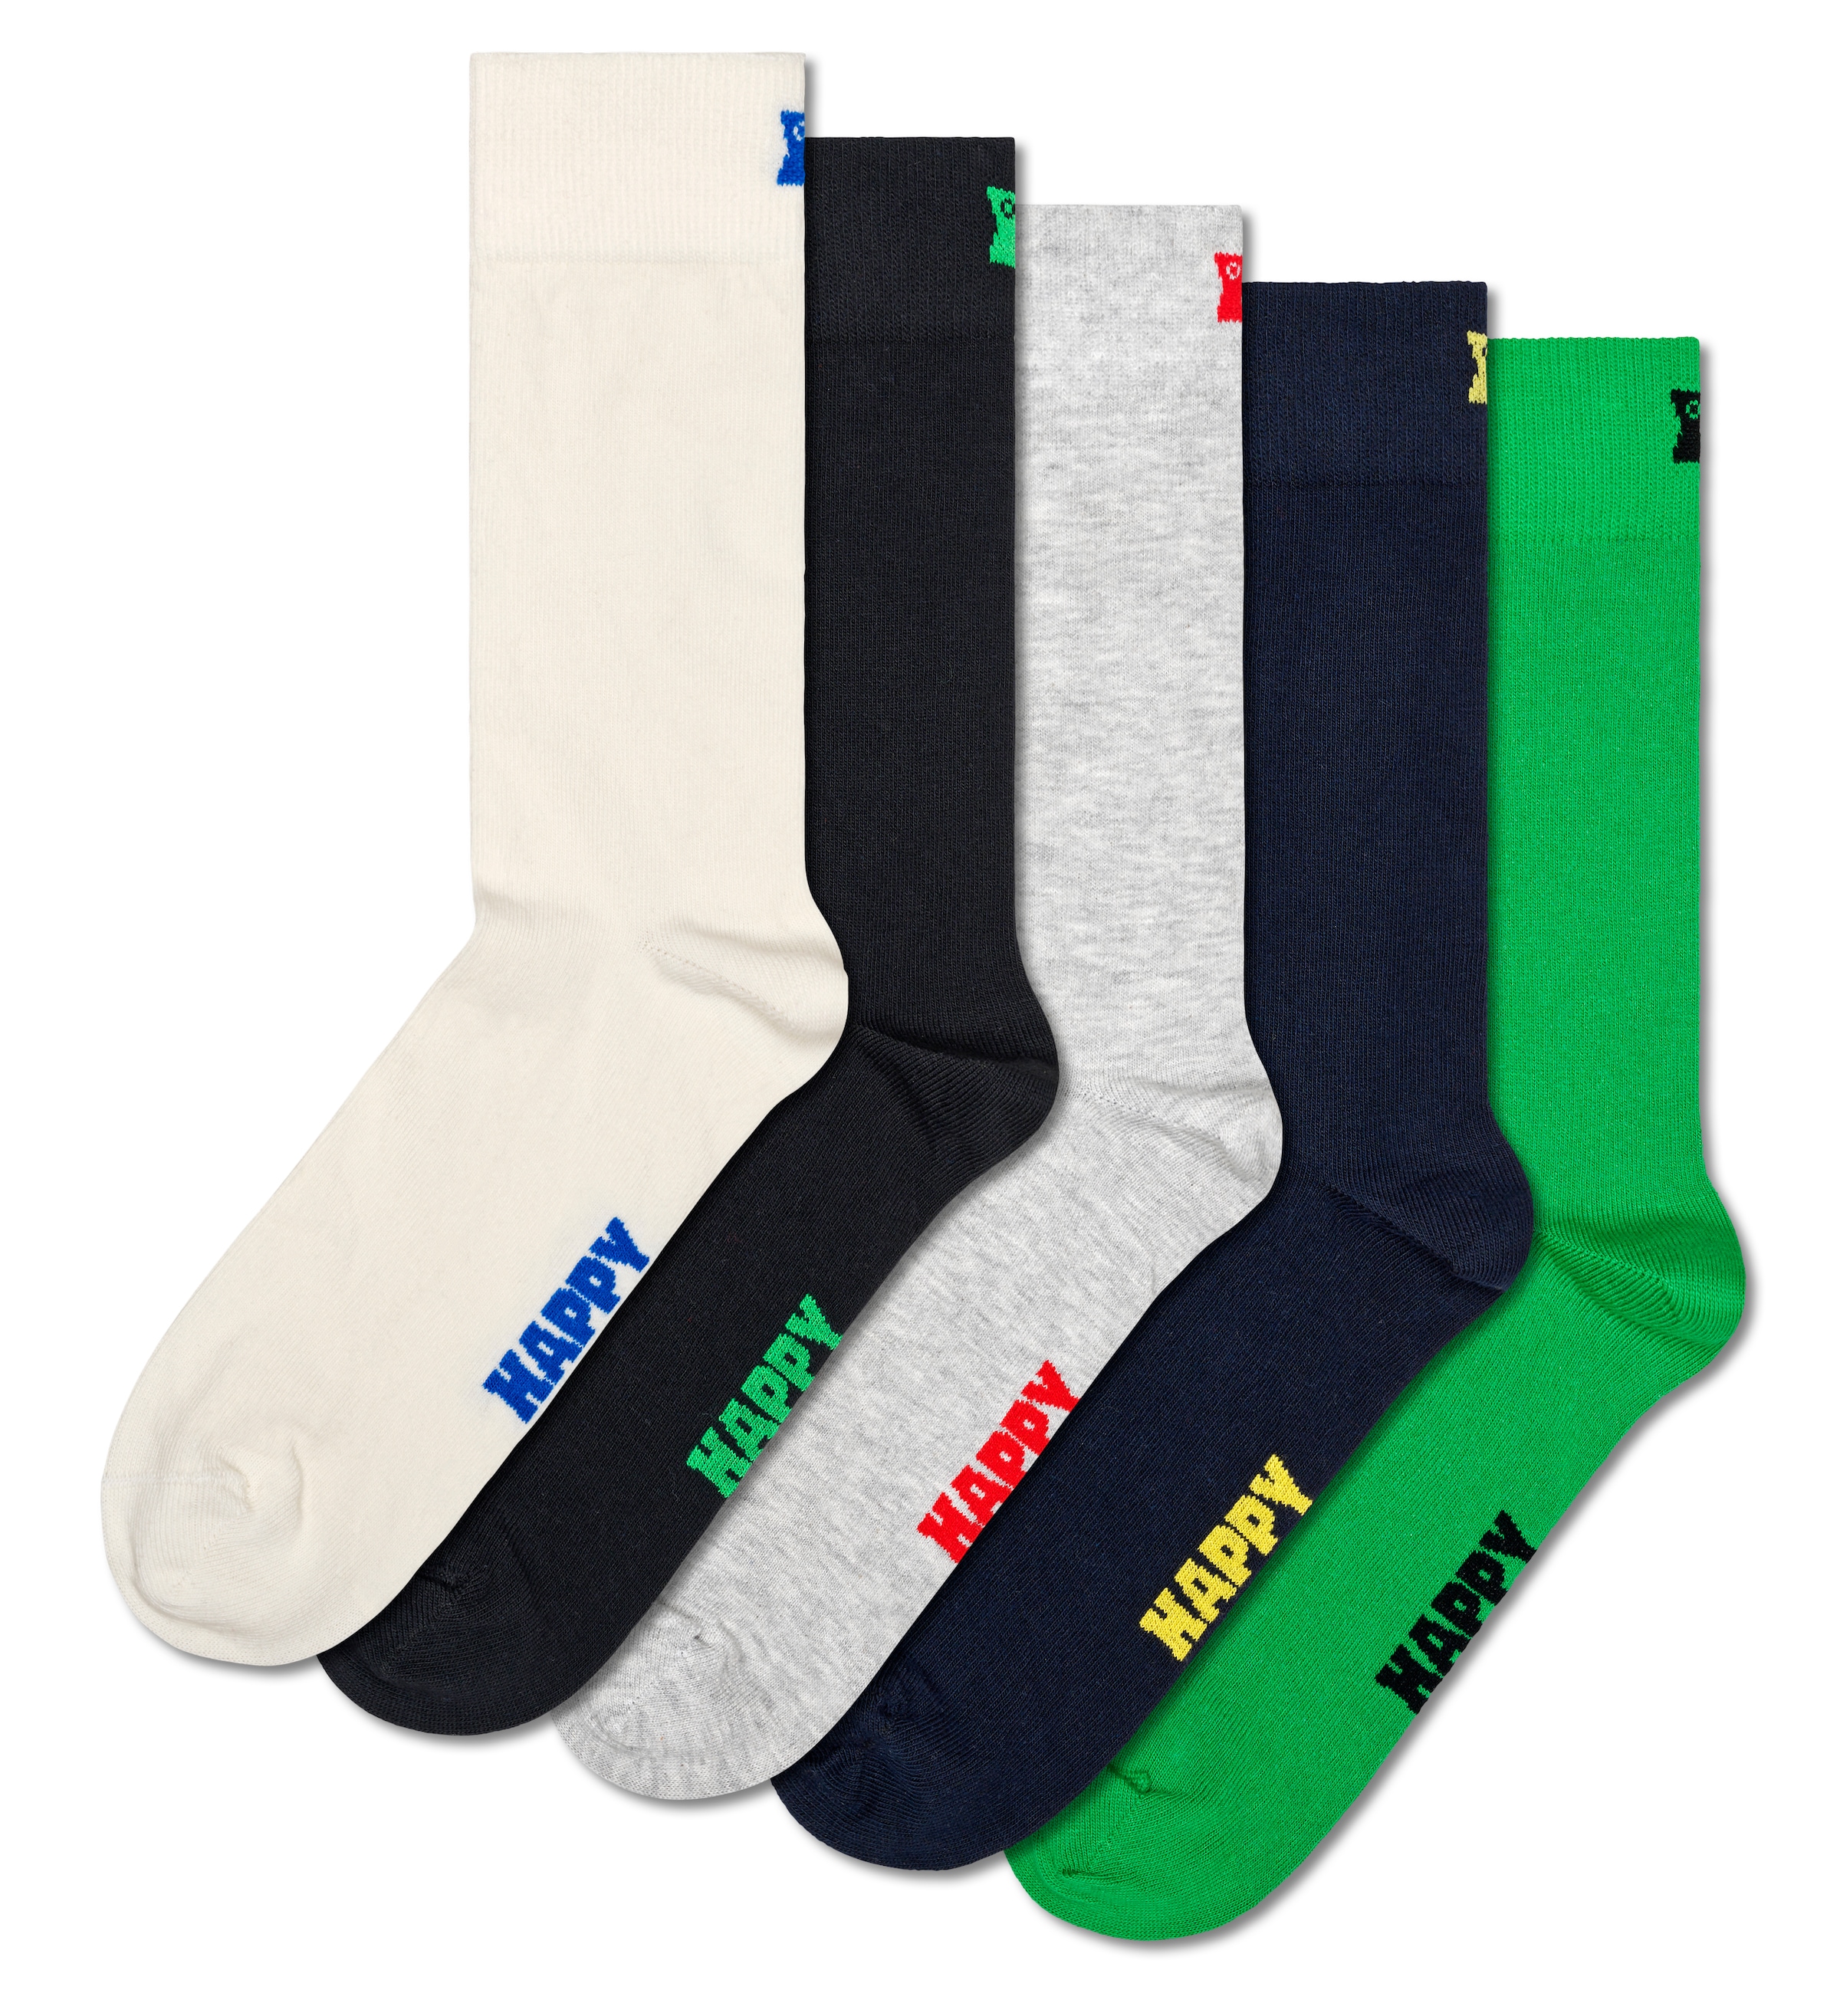 Happy Socks  Socken (Set 5 poros) su schlichtem Loo...